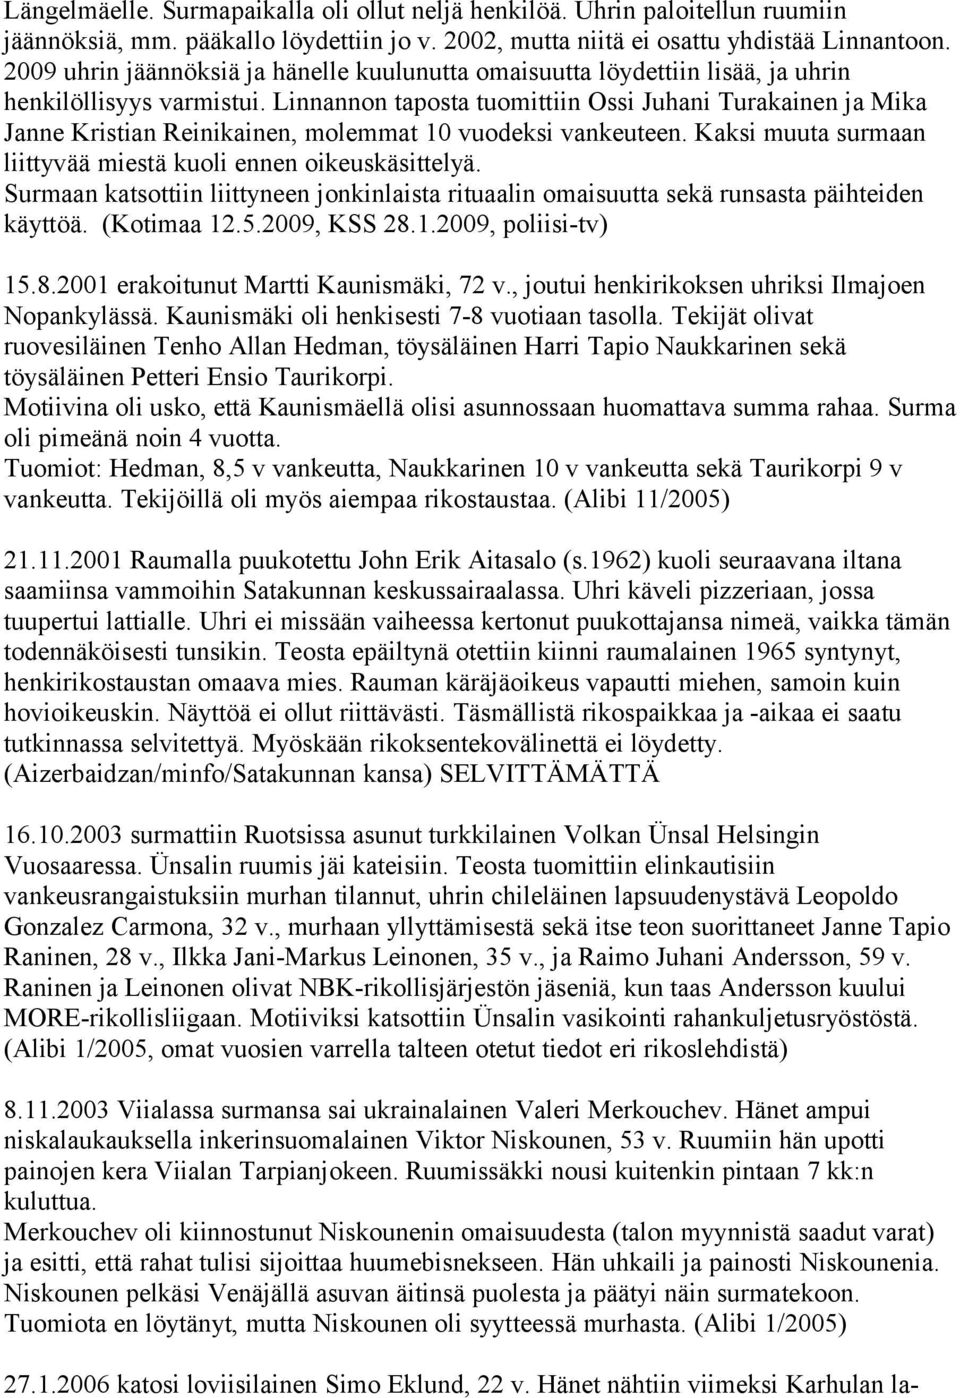 Linnannon taposta tuomittiin Ossi Juhani Turakainen ja Mika Janne Kristian Reinikainen, molemmat 10 vuodeksi vankeuteen. Kaksi muuta surmaan liittyvää miestä kuoli ennen oikeuskäsittelyä.